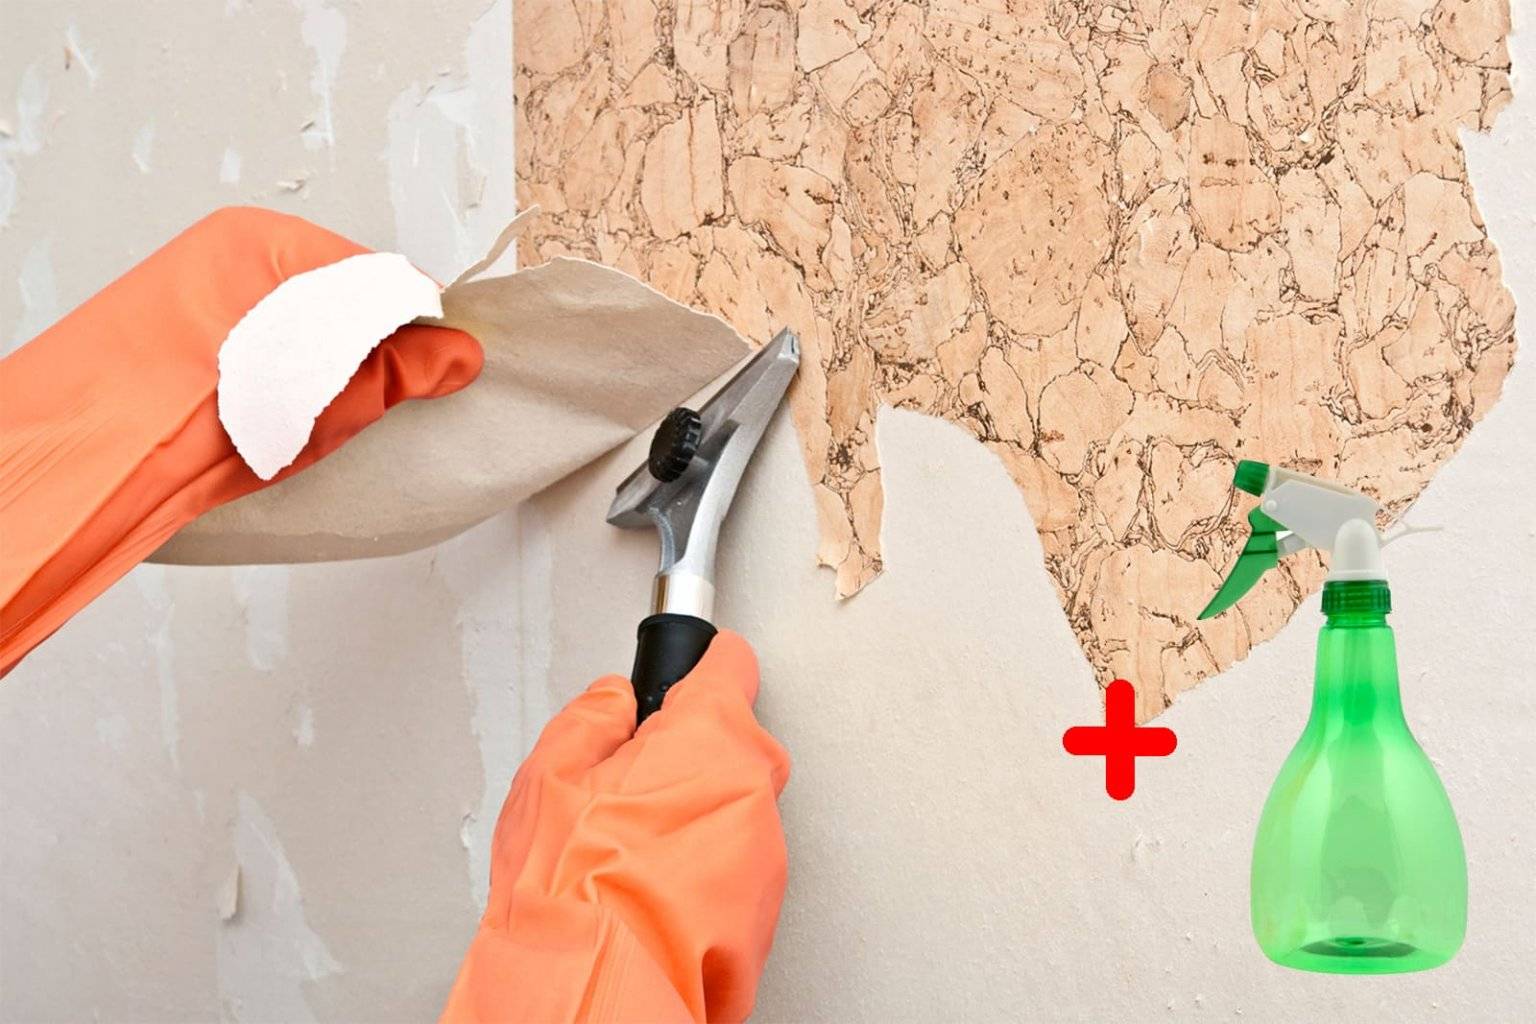 Полезные советы, как очистить новые обои от пятен, а старые снять со стен перед ремонтом